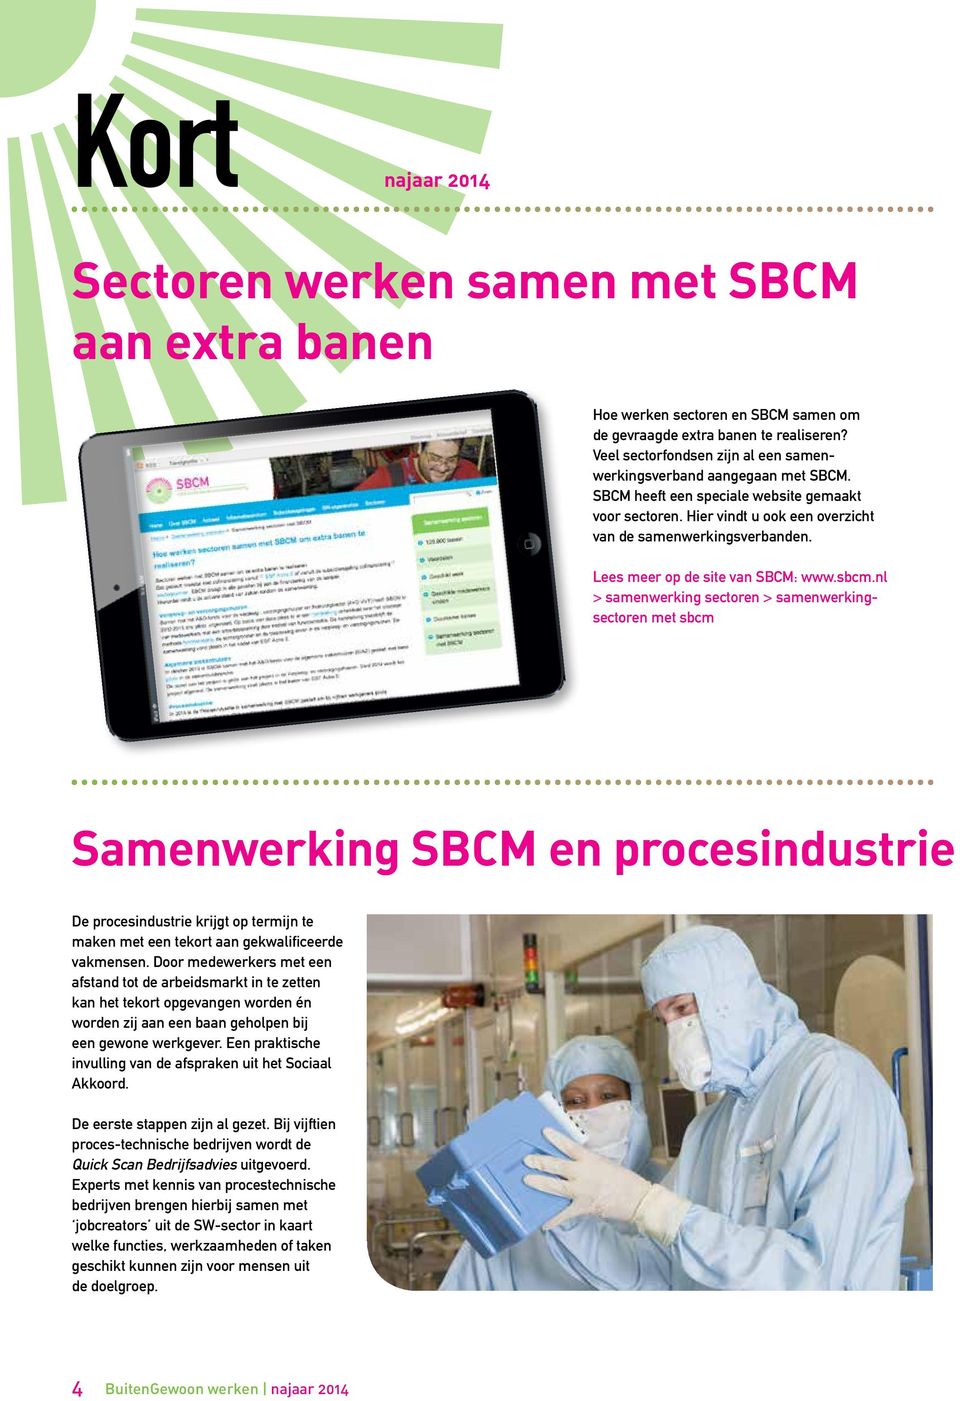 Lees meer op de site van SBCM: www.sbcm.